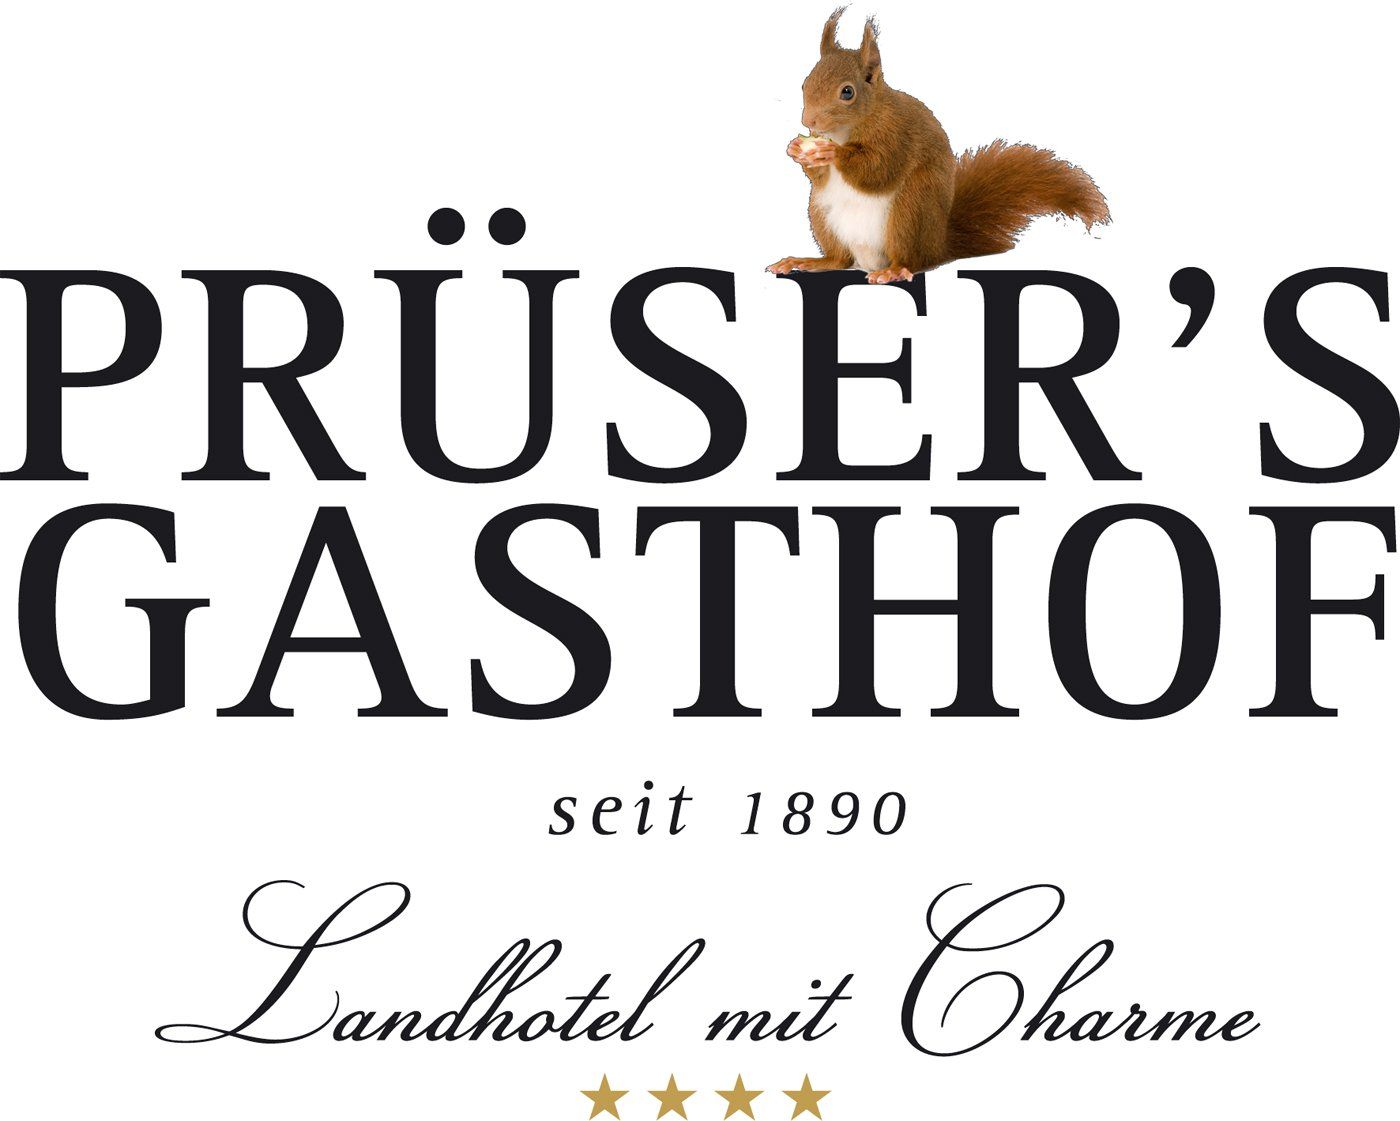 (c) Pruesers-gasthof.de